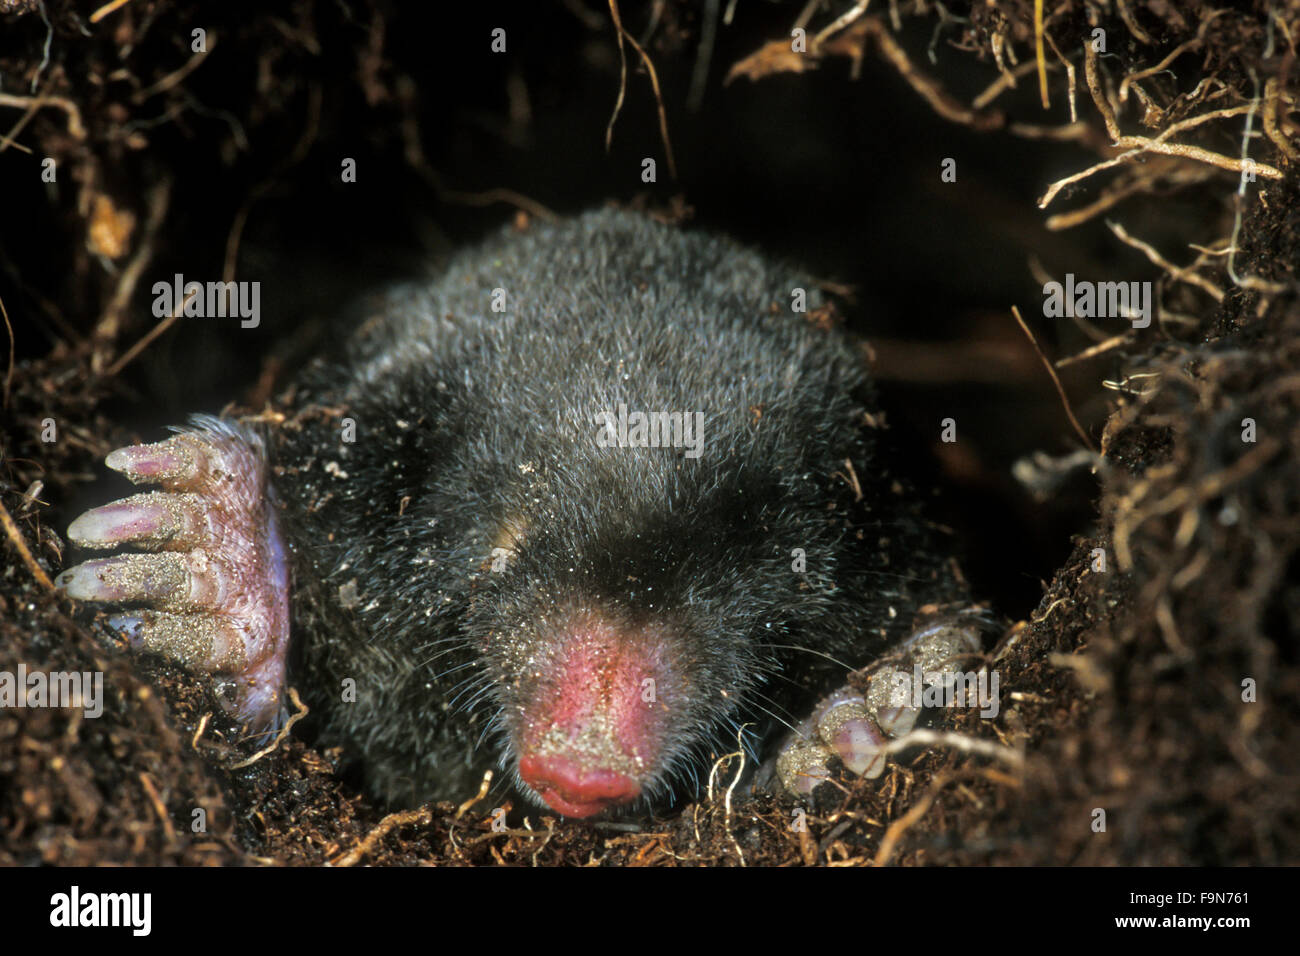 European mole / common mole (Talpa europaea) foraging underground in tunnel Stock Photo